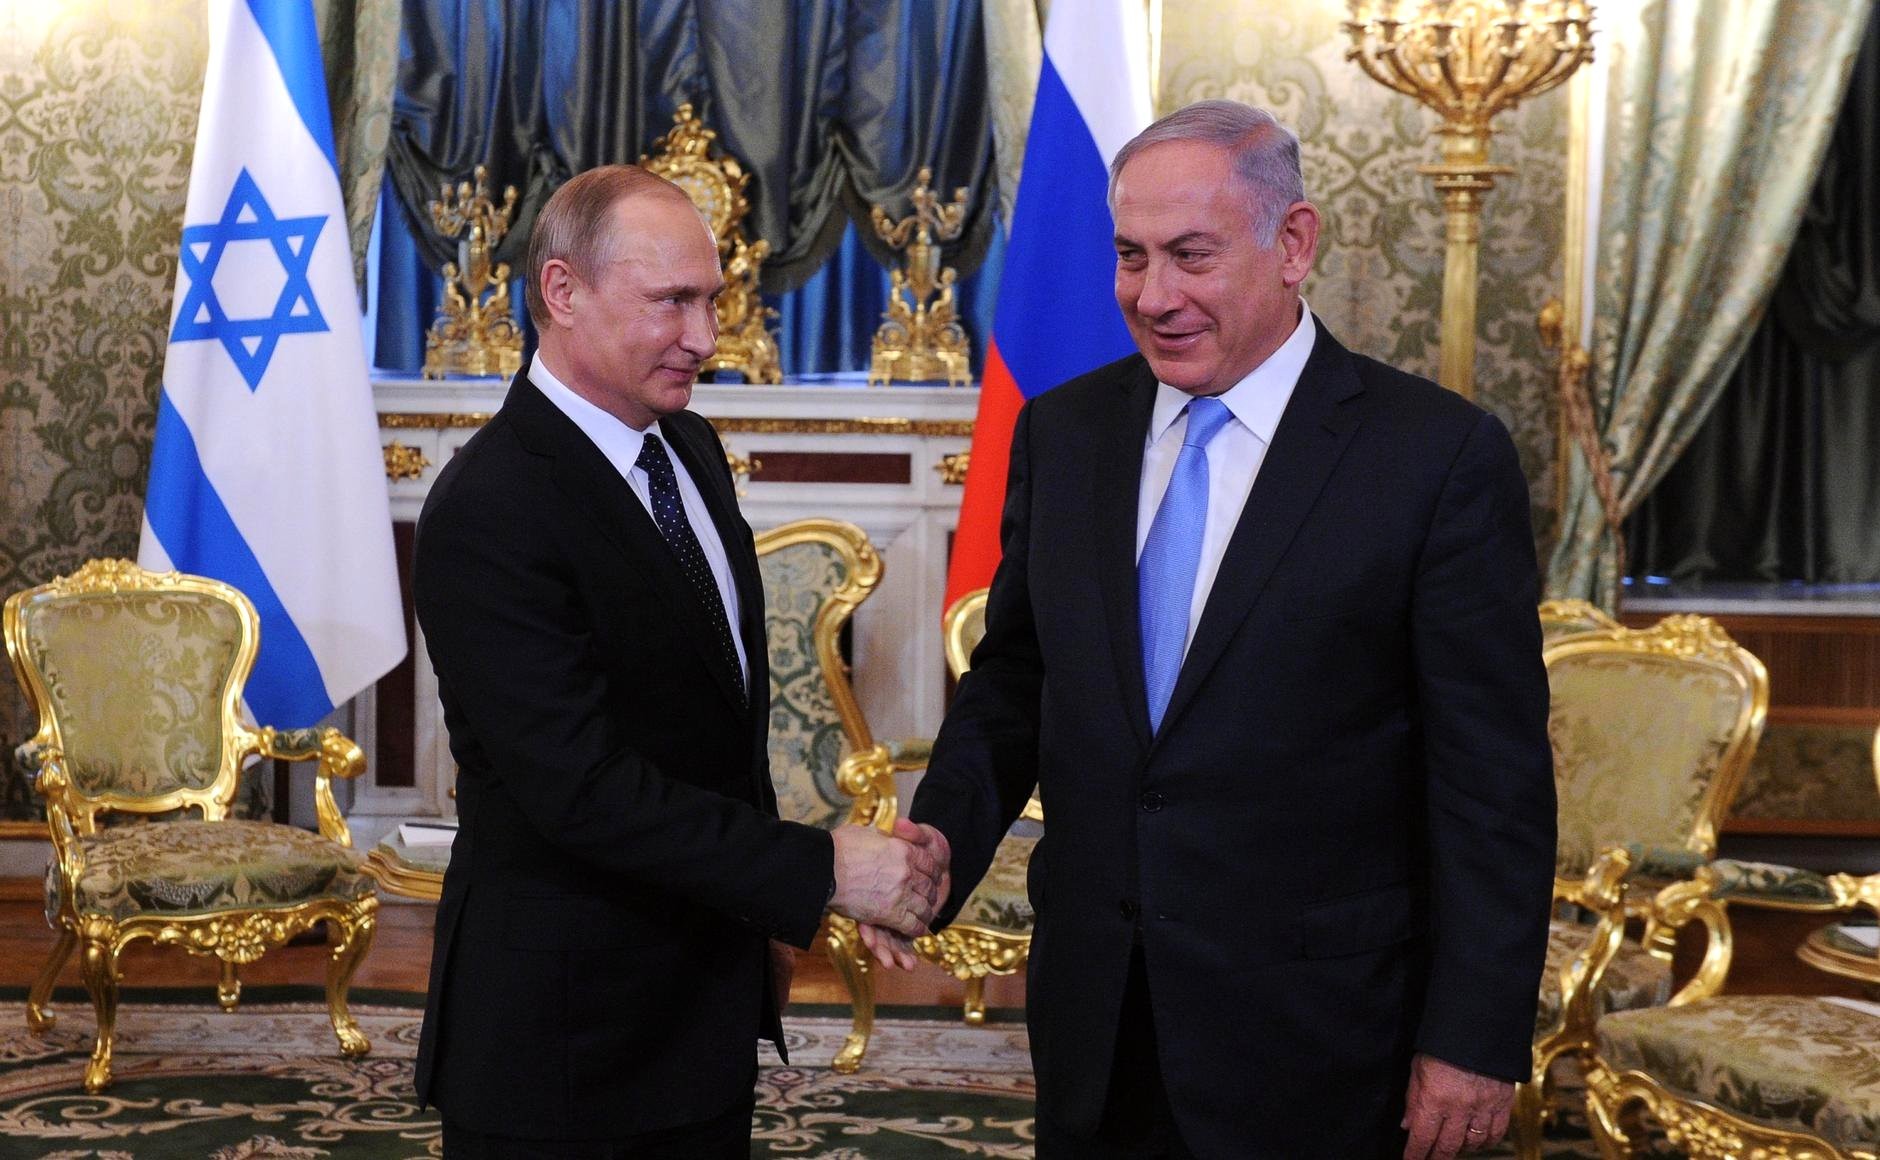 Μετωπική σύγκρουση Τελ Αβίβ-Μόσχας για την πρόσκληση της Χαμάς στη Ρωσία: «Είστε αισχροί» λέει το Ισραήλ